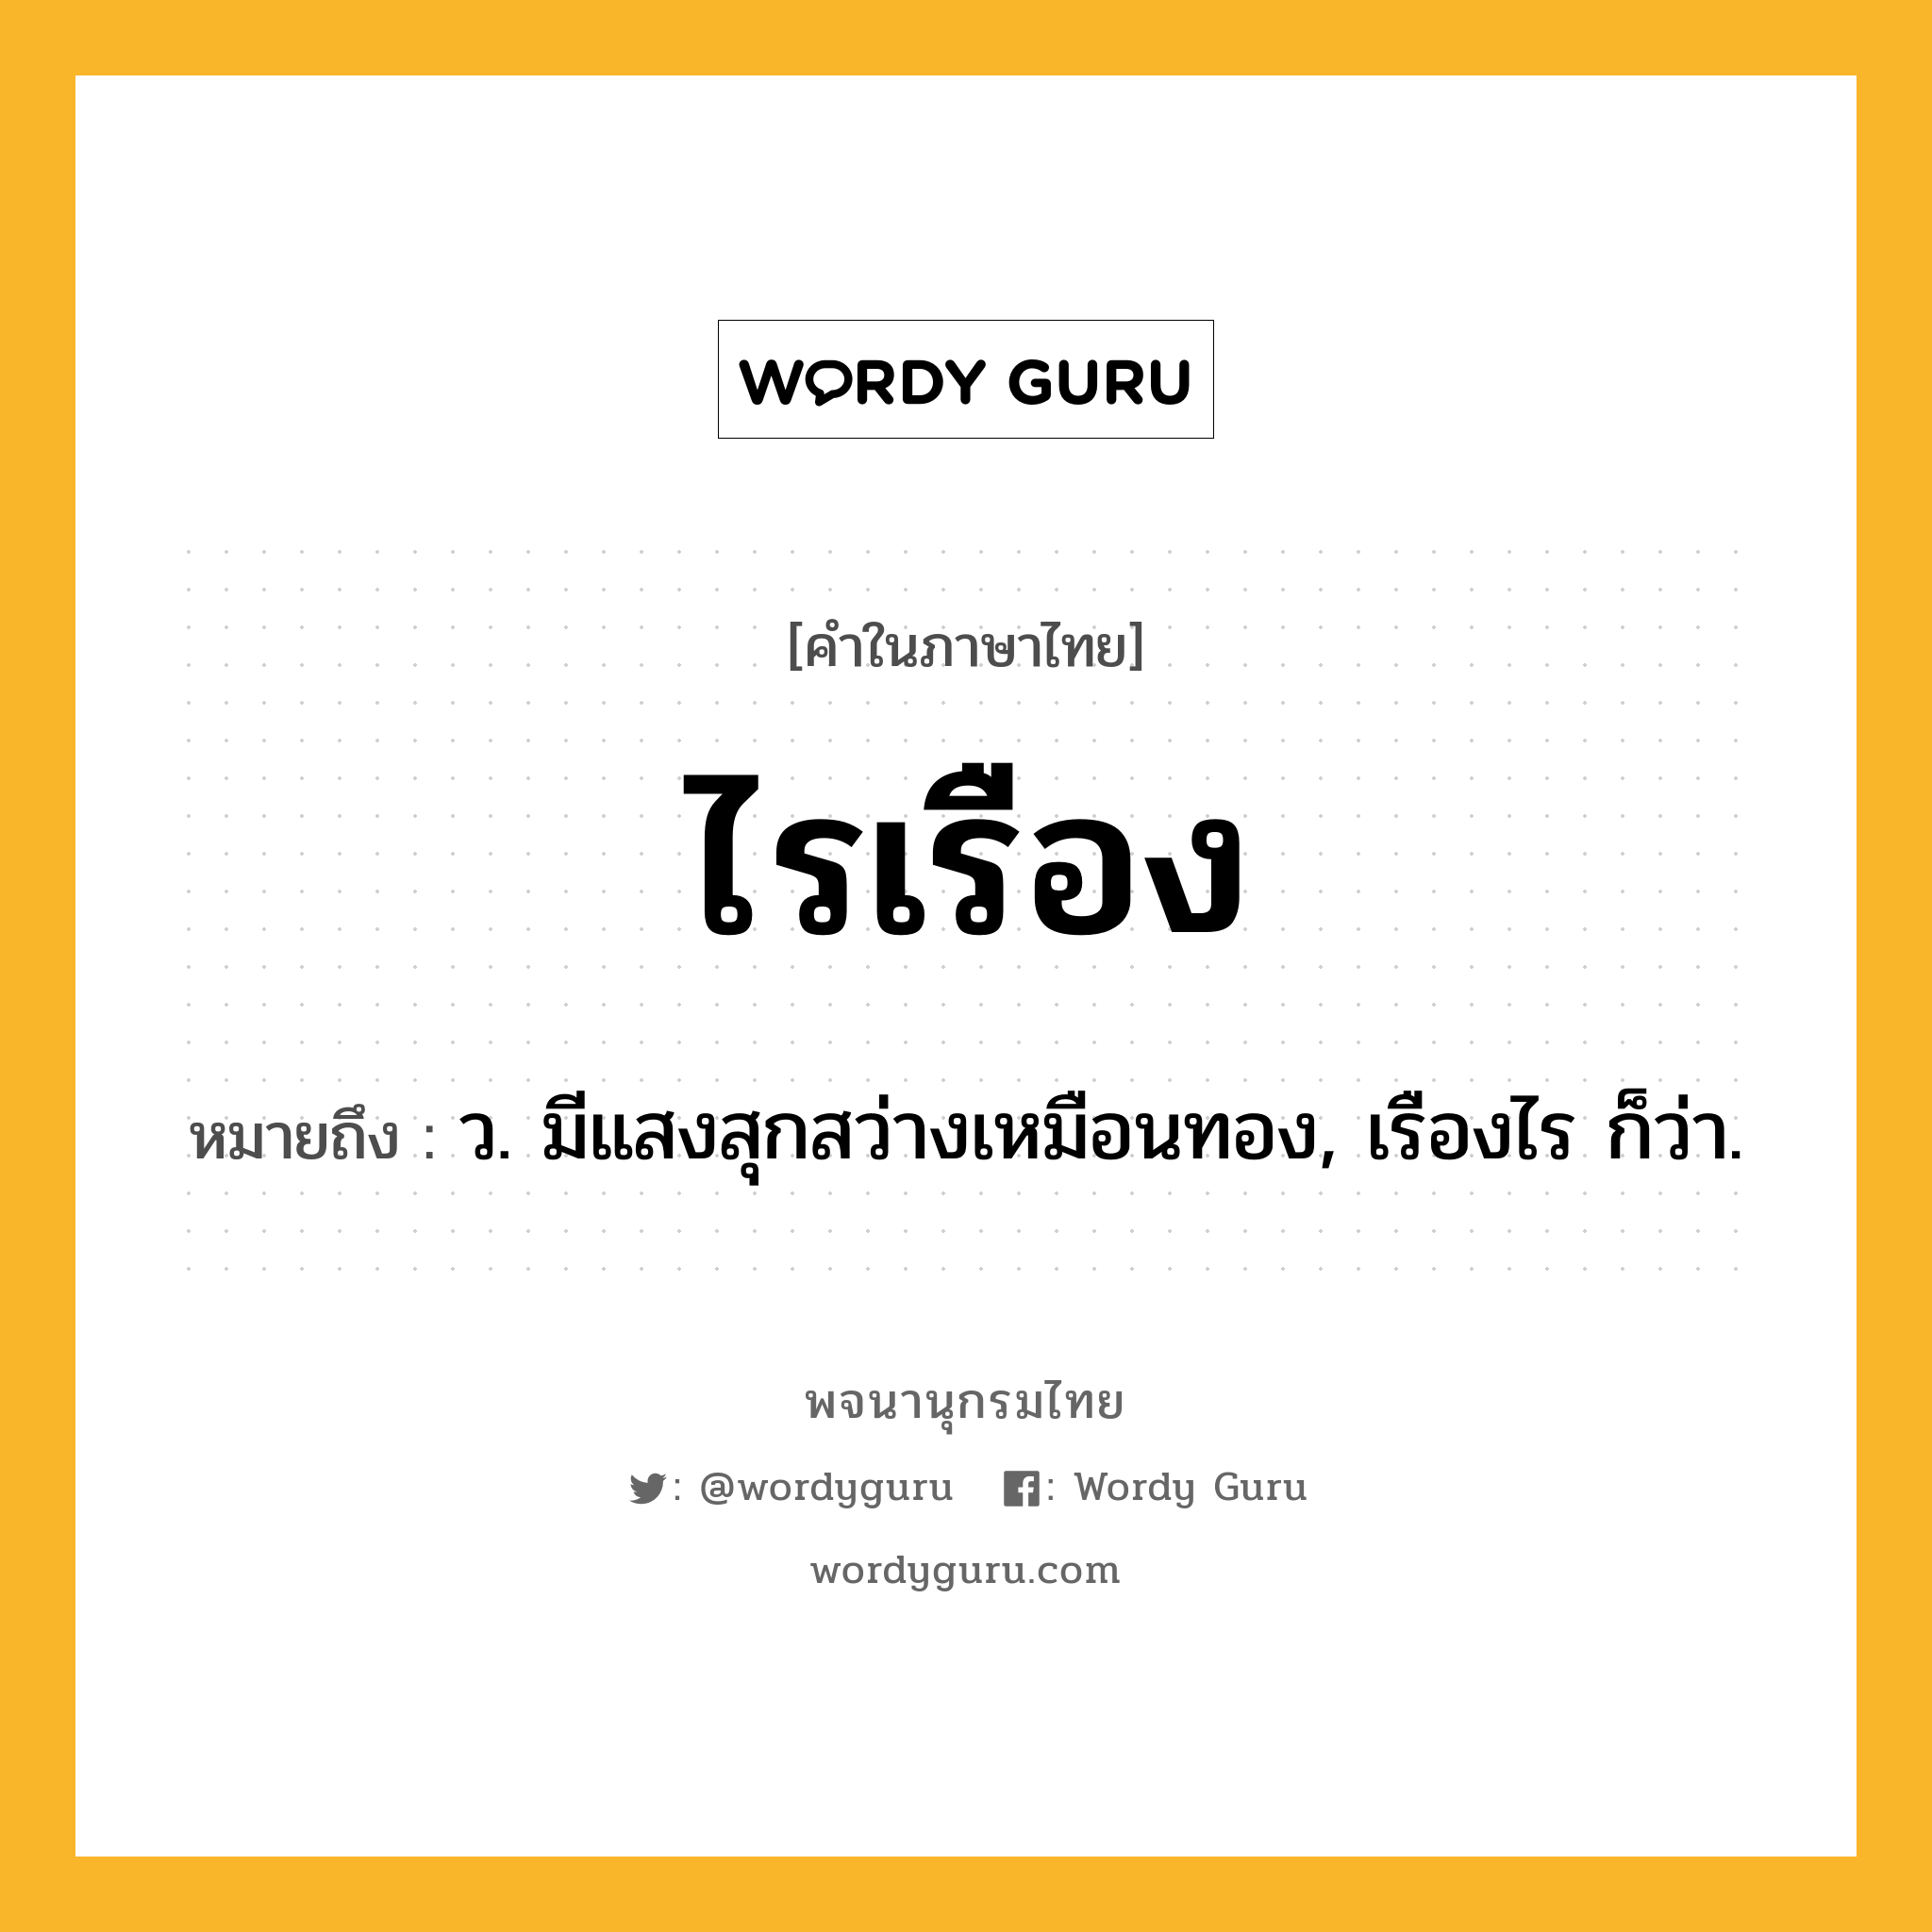 ไรเรือง ความหมาย หมายถึงอะไร?, คำในภาษาไทย ไรเรือง หมายถึง ว. มีแสงสุกสว่างเหมือนทอง, เรืองไร ก็ว่า.